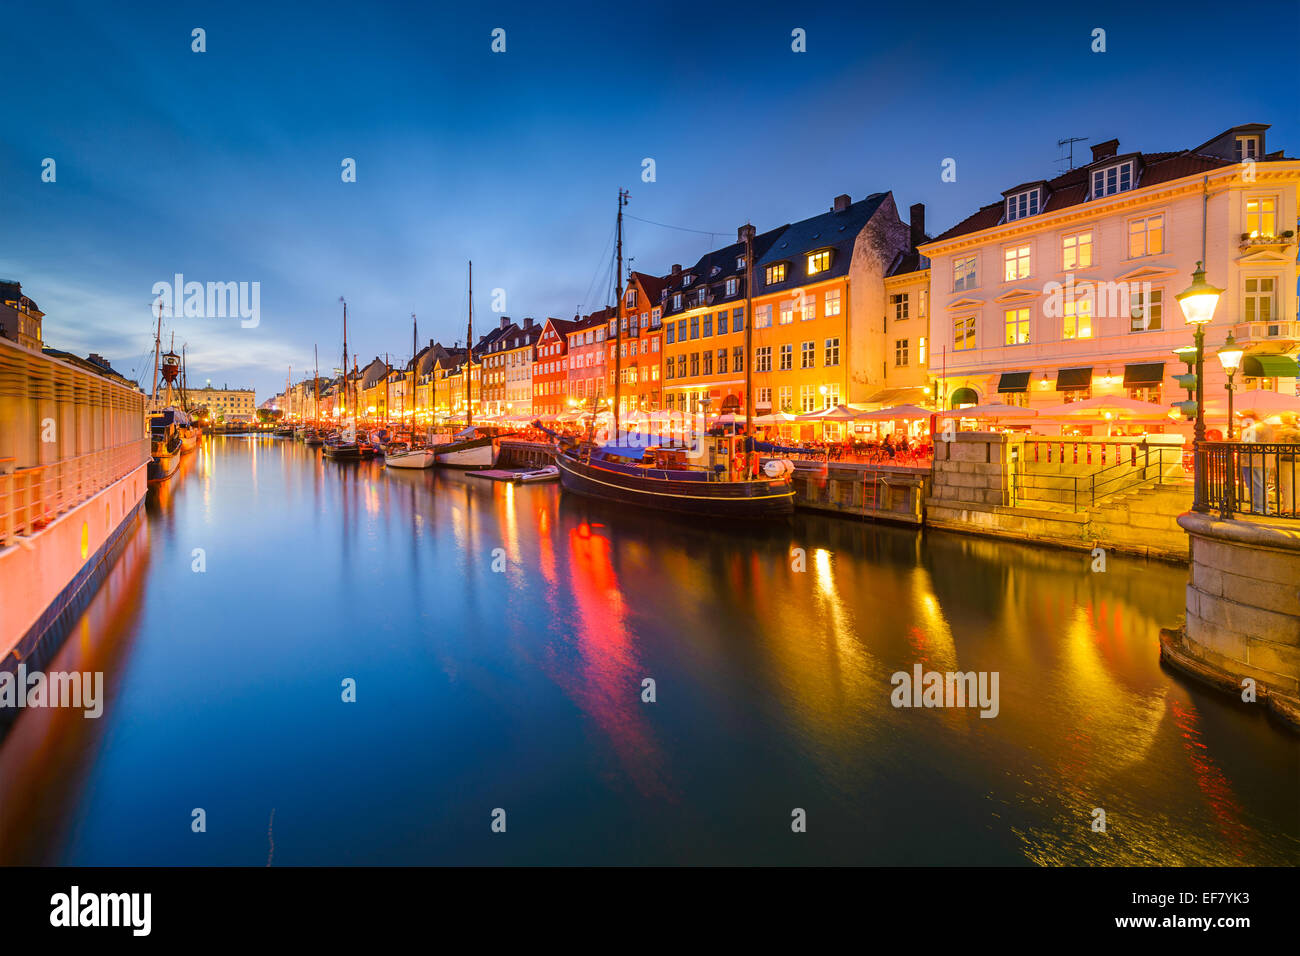 Kopenhagen am Nyhavn Kanal. Stockfoto